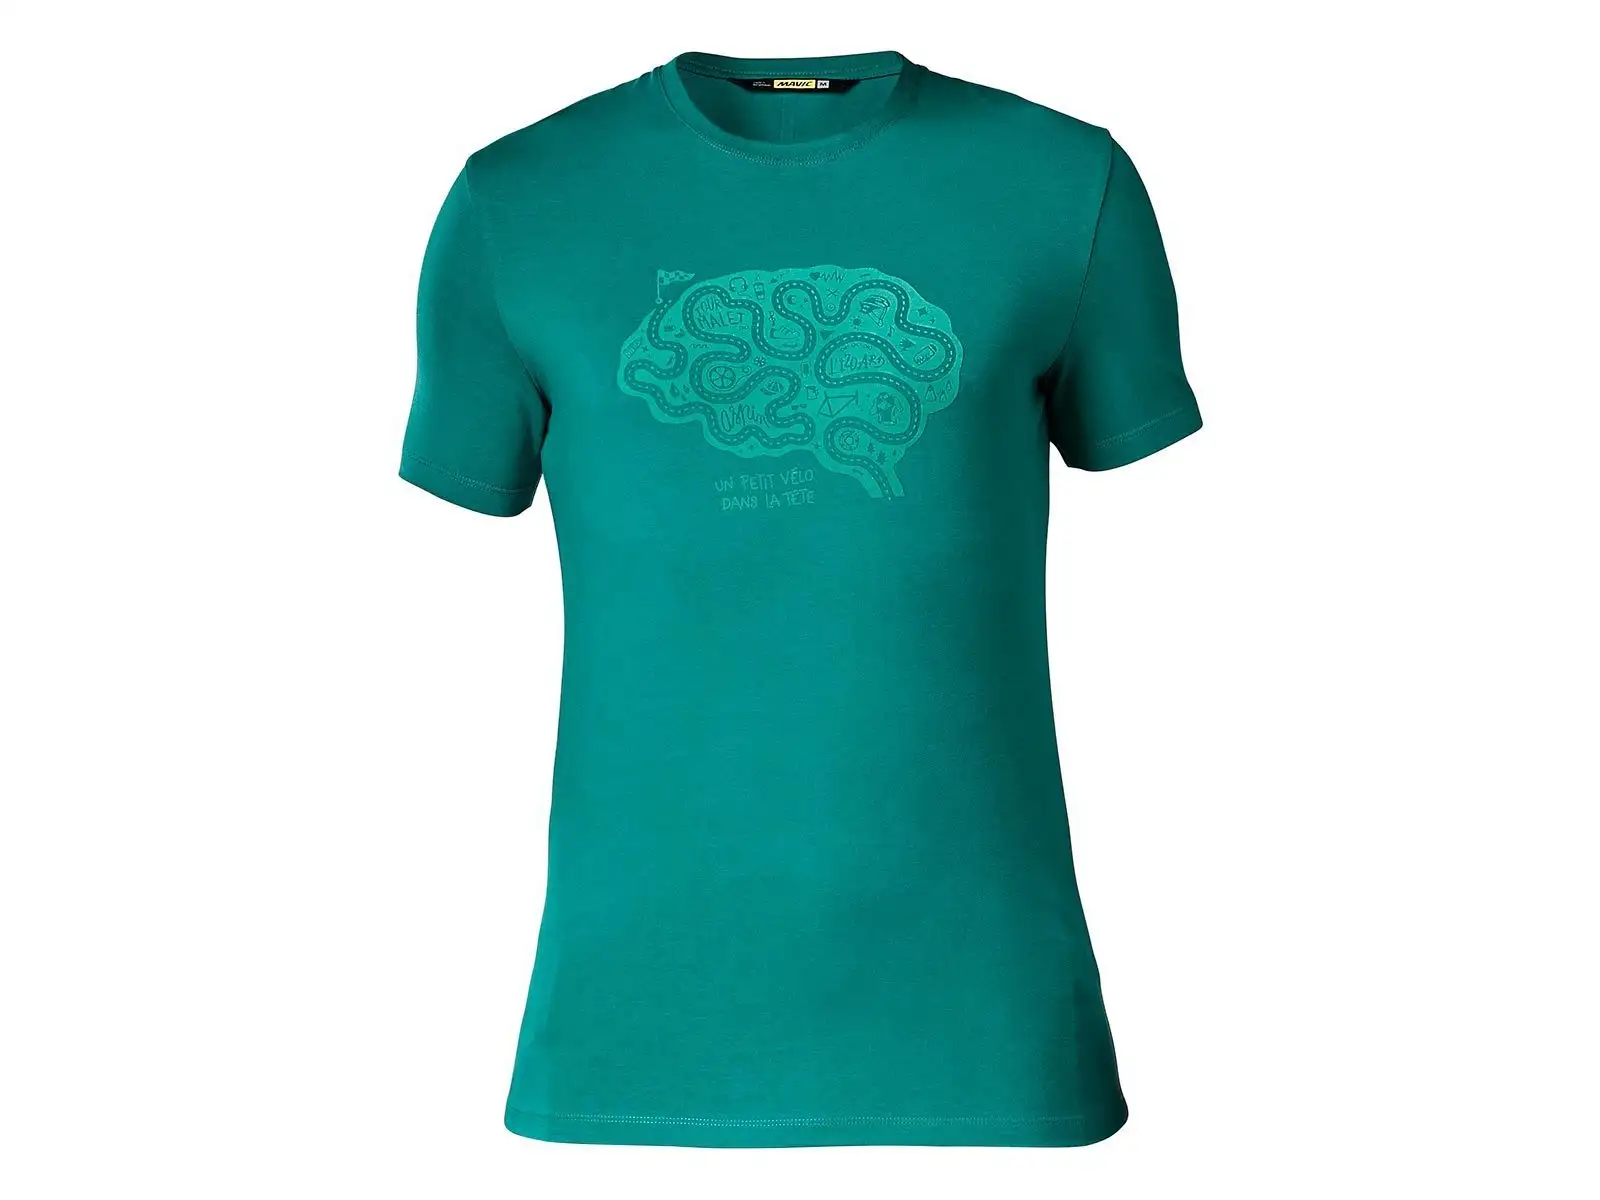 Mavic Cyclist Brain pánske tričko s krátkym rukávom everglade 2019